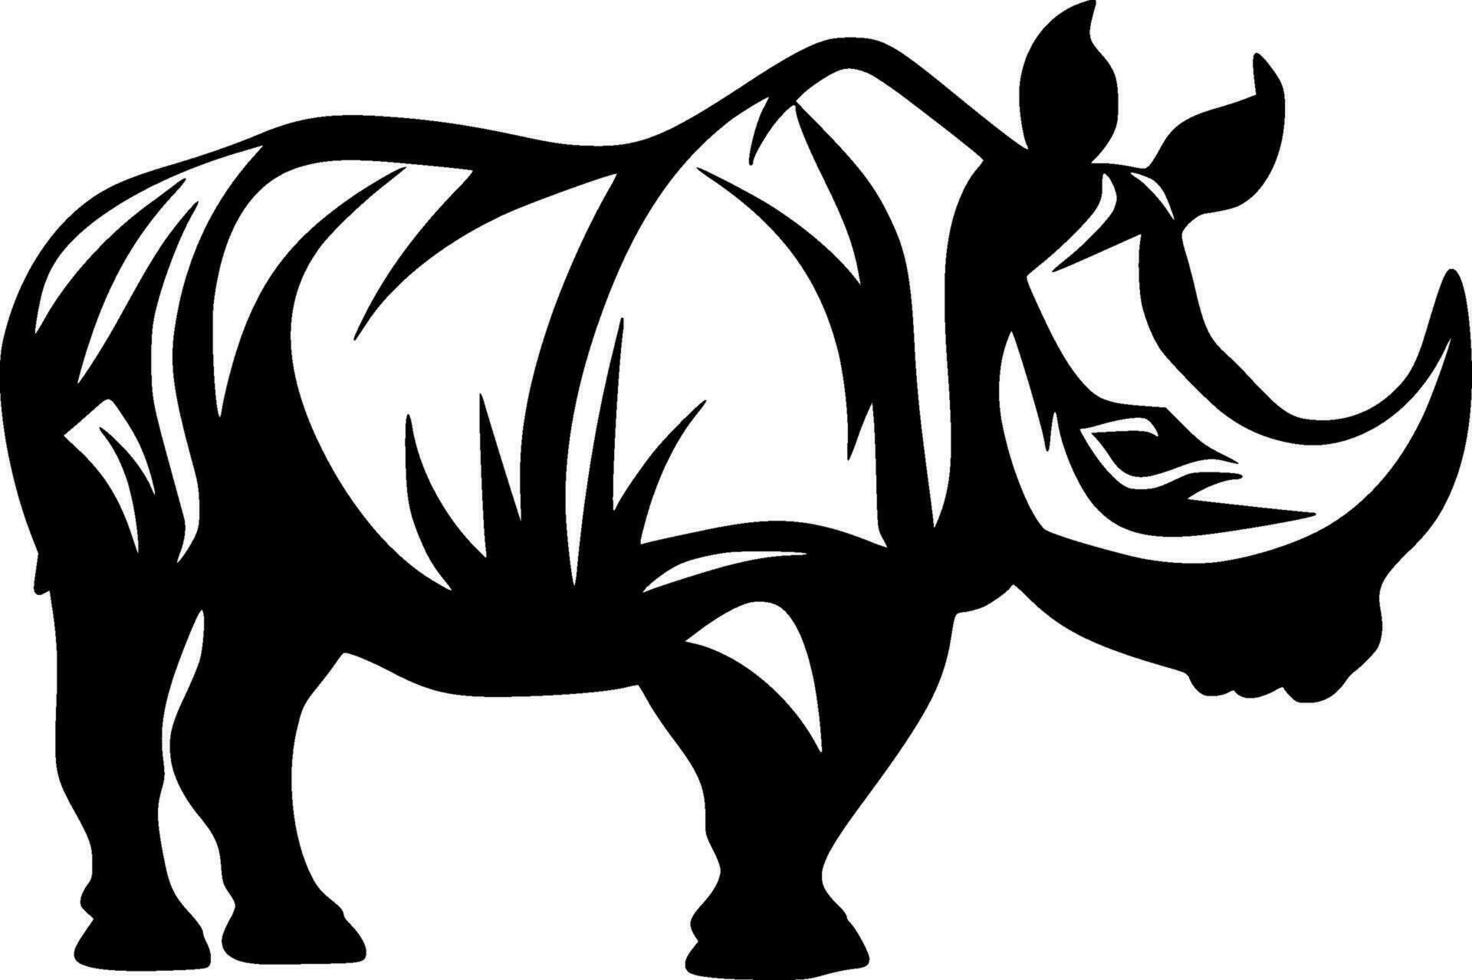 noshörning - minimalistisk och platt logotyp - vektor illustration